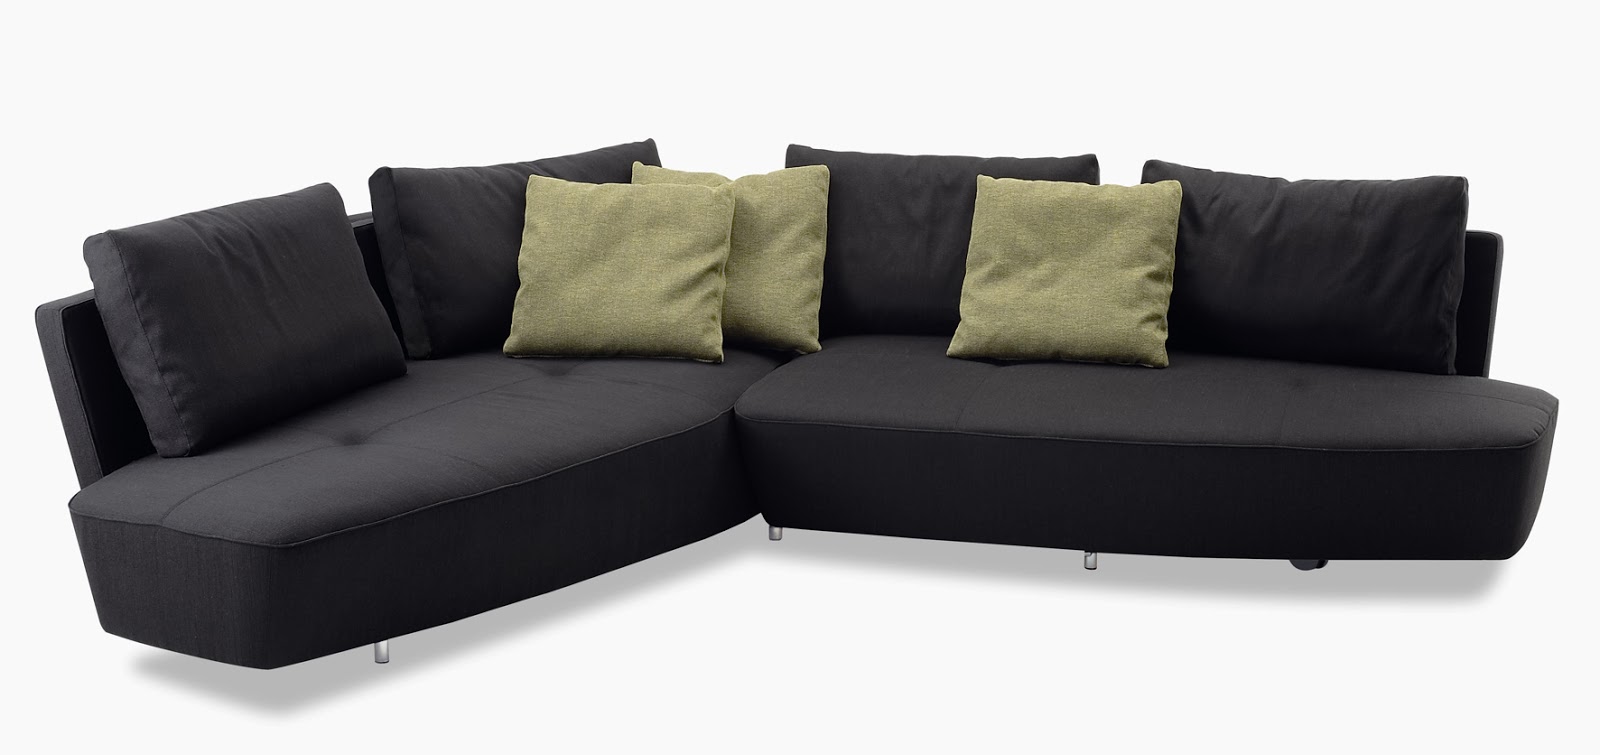 Model Desain  Kursi  Sofa  Ruang Tamu Rumah Minimalis